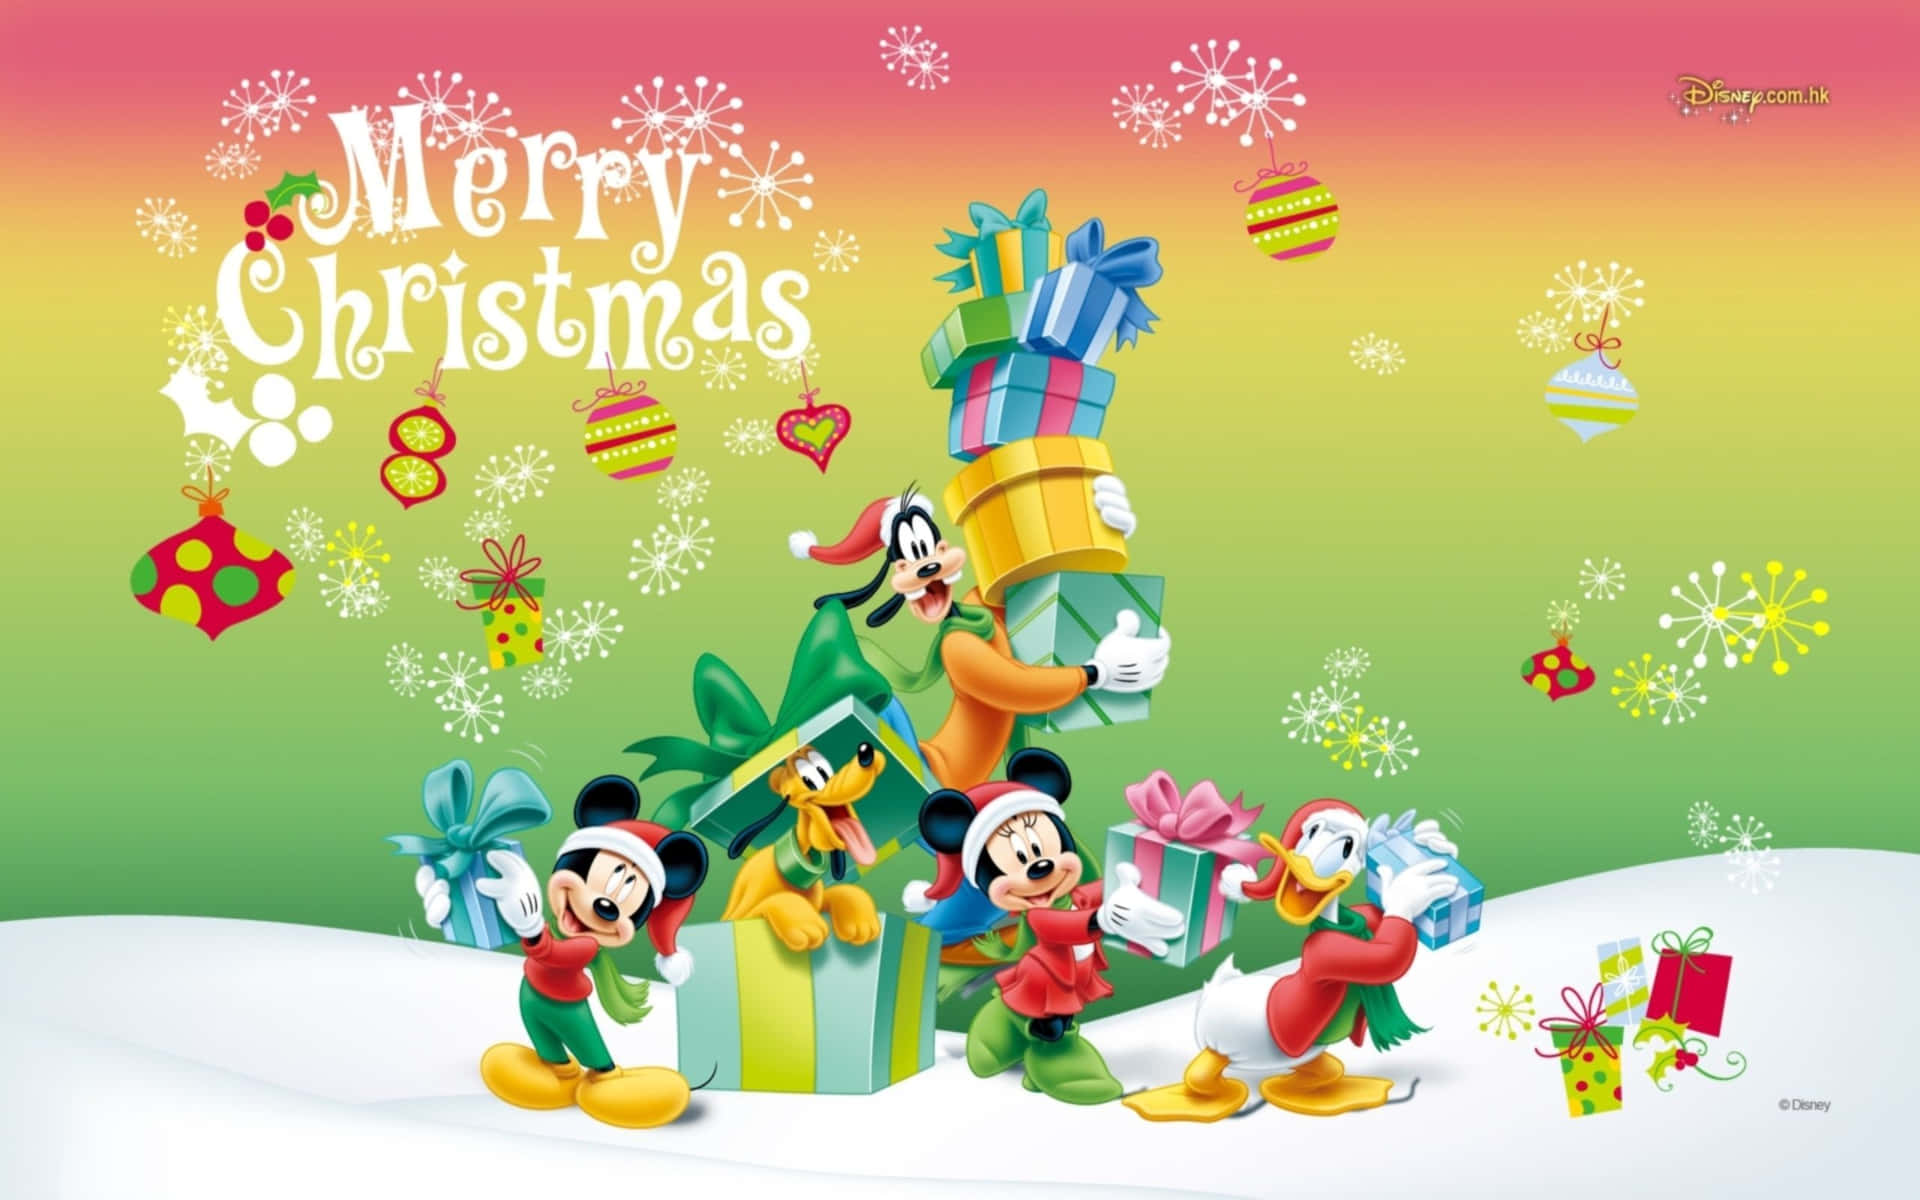 Celebrandoas Festas Com Personagens De Natal Da Disney Em Um Ipad Brilhante E Animado. Papel de Parede